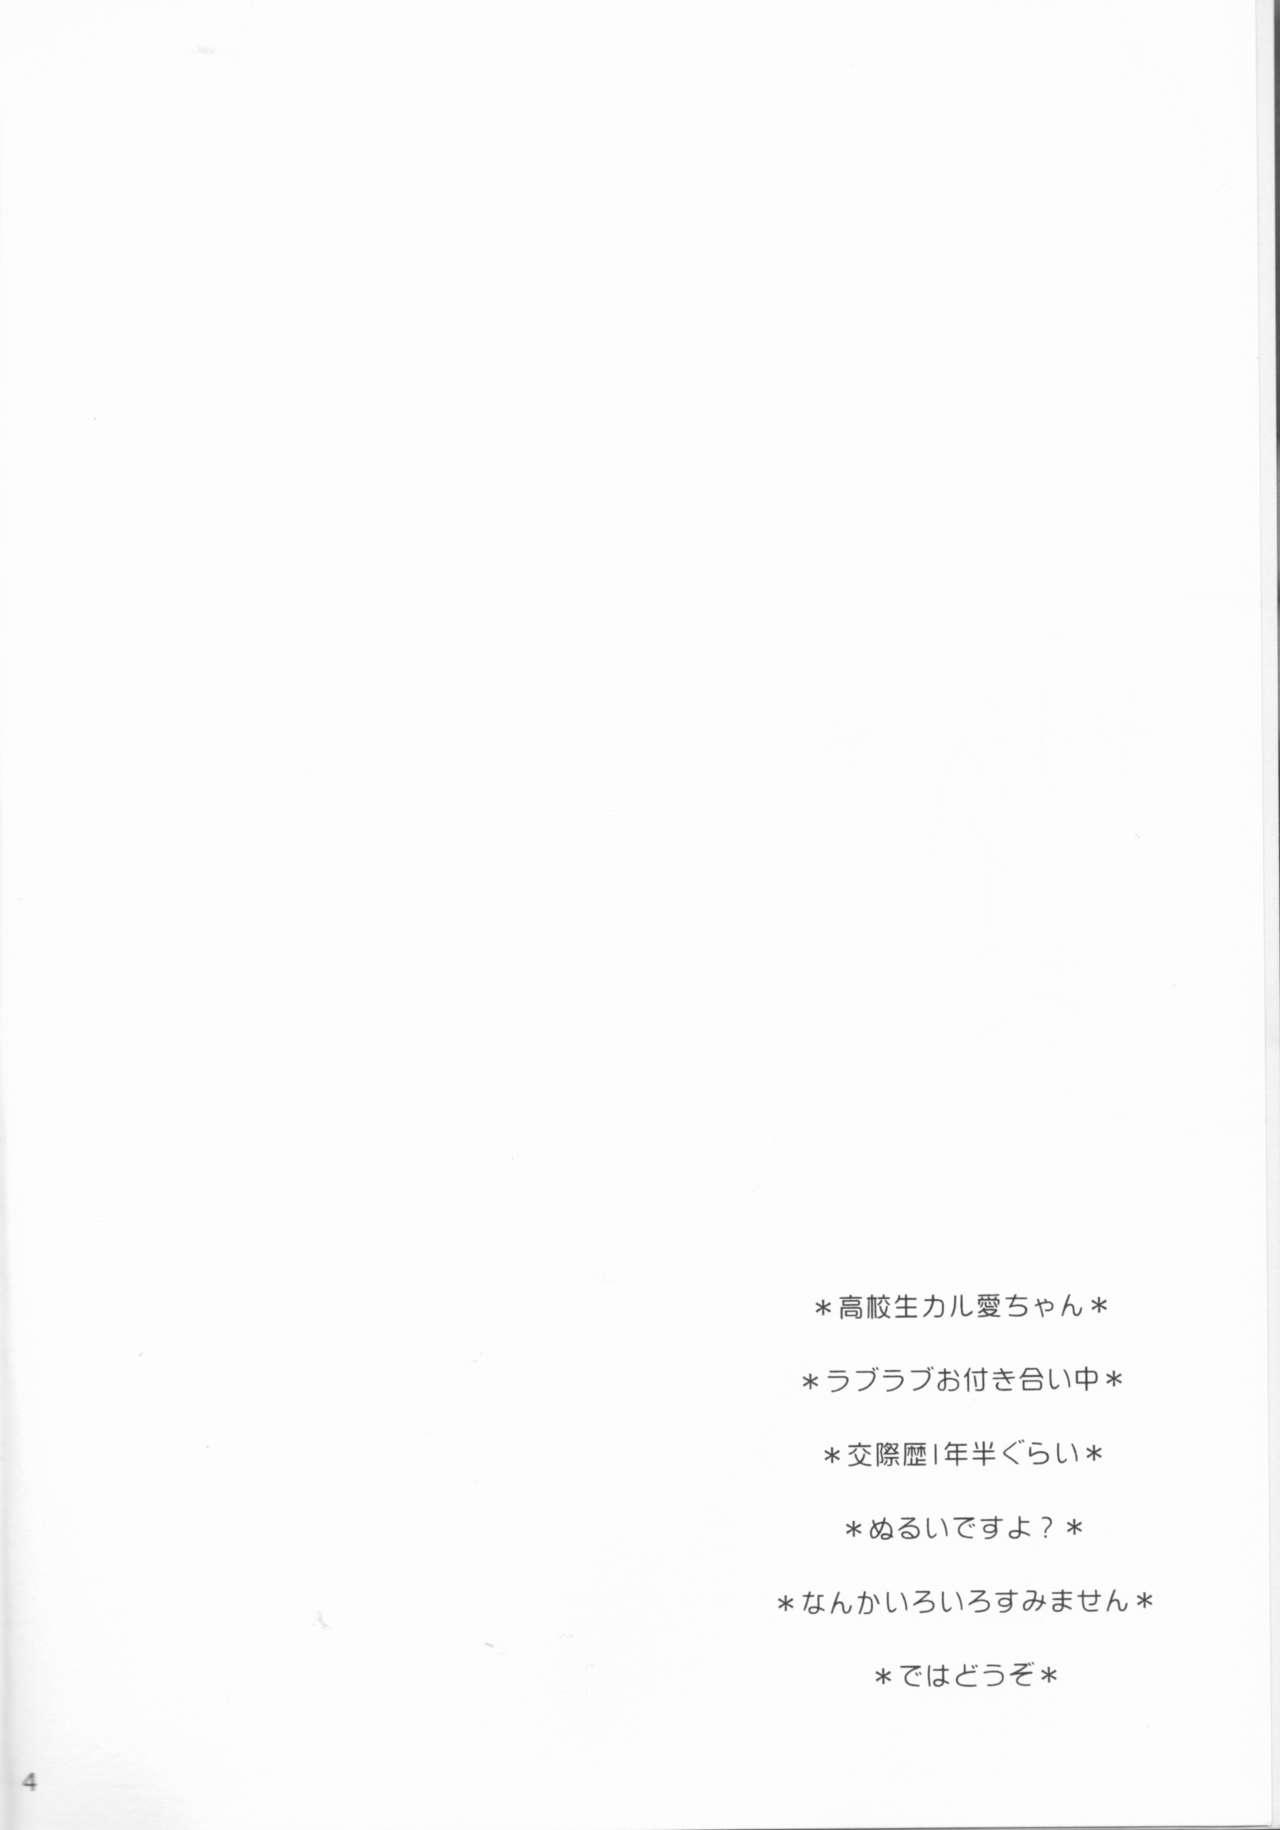 Ebony Yasashiikimi - Ansatsu kyoushitsu Threesome - Page 4